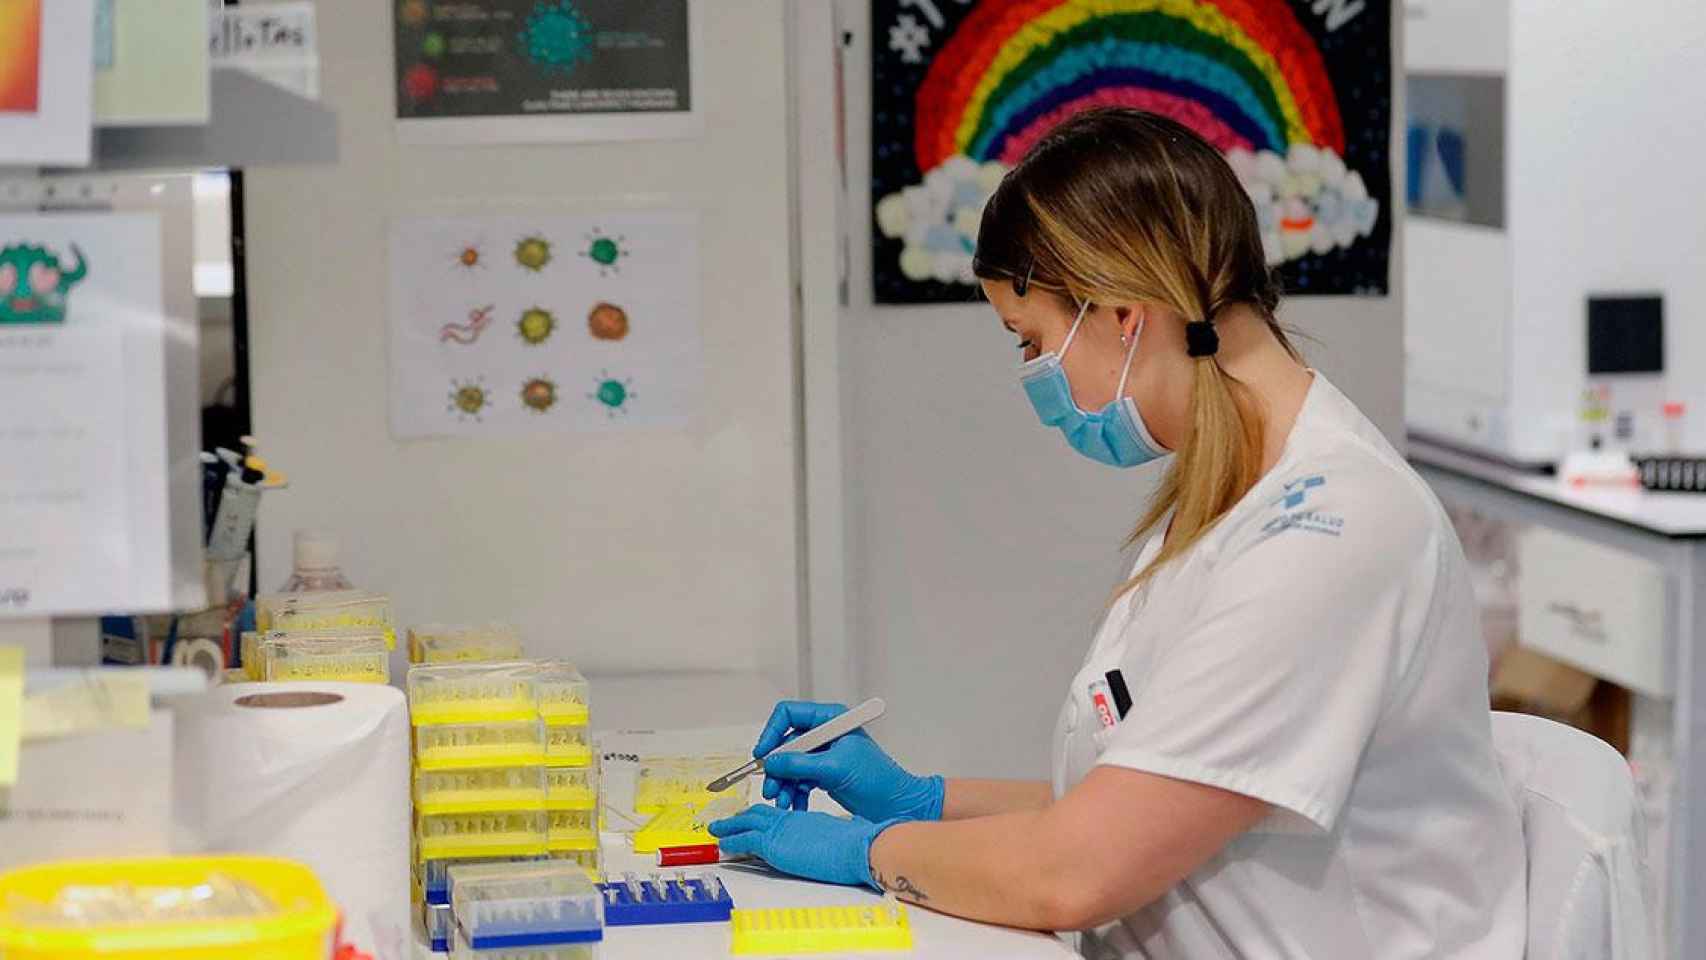 Una profesional sanitaria analiza pruebas diagnósticas de coronavirus en un hospital de España / EFE